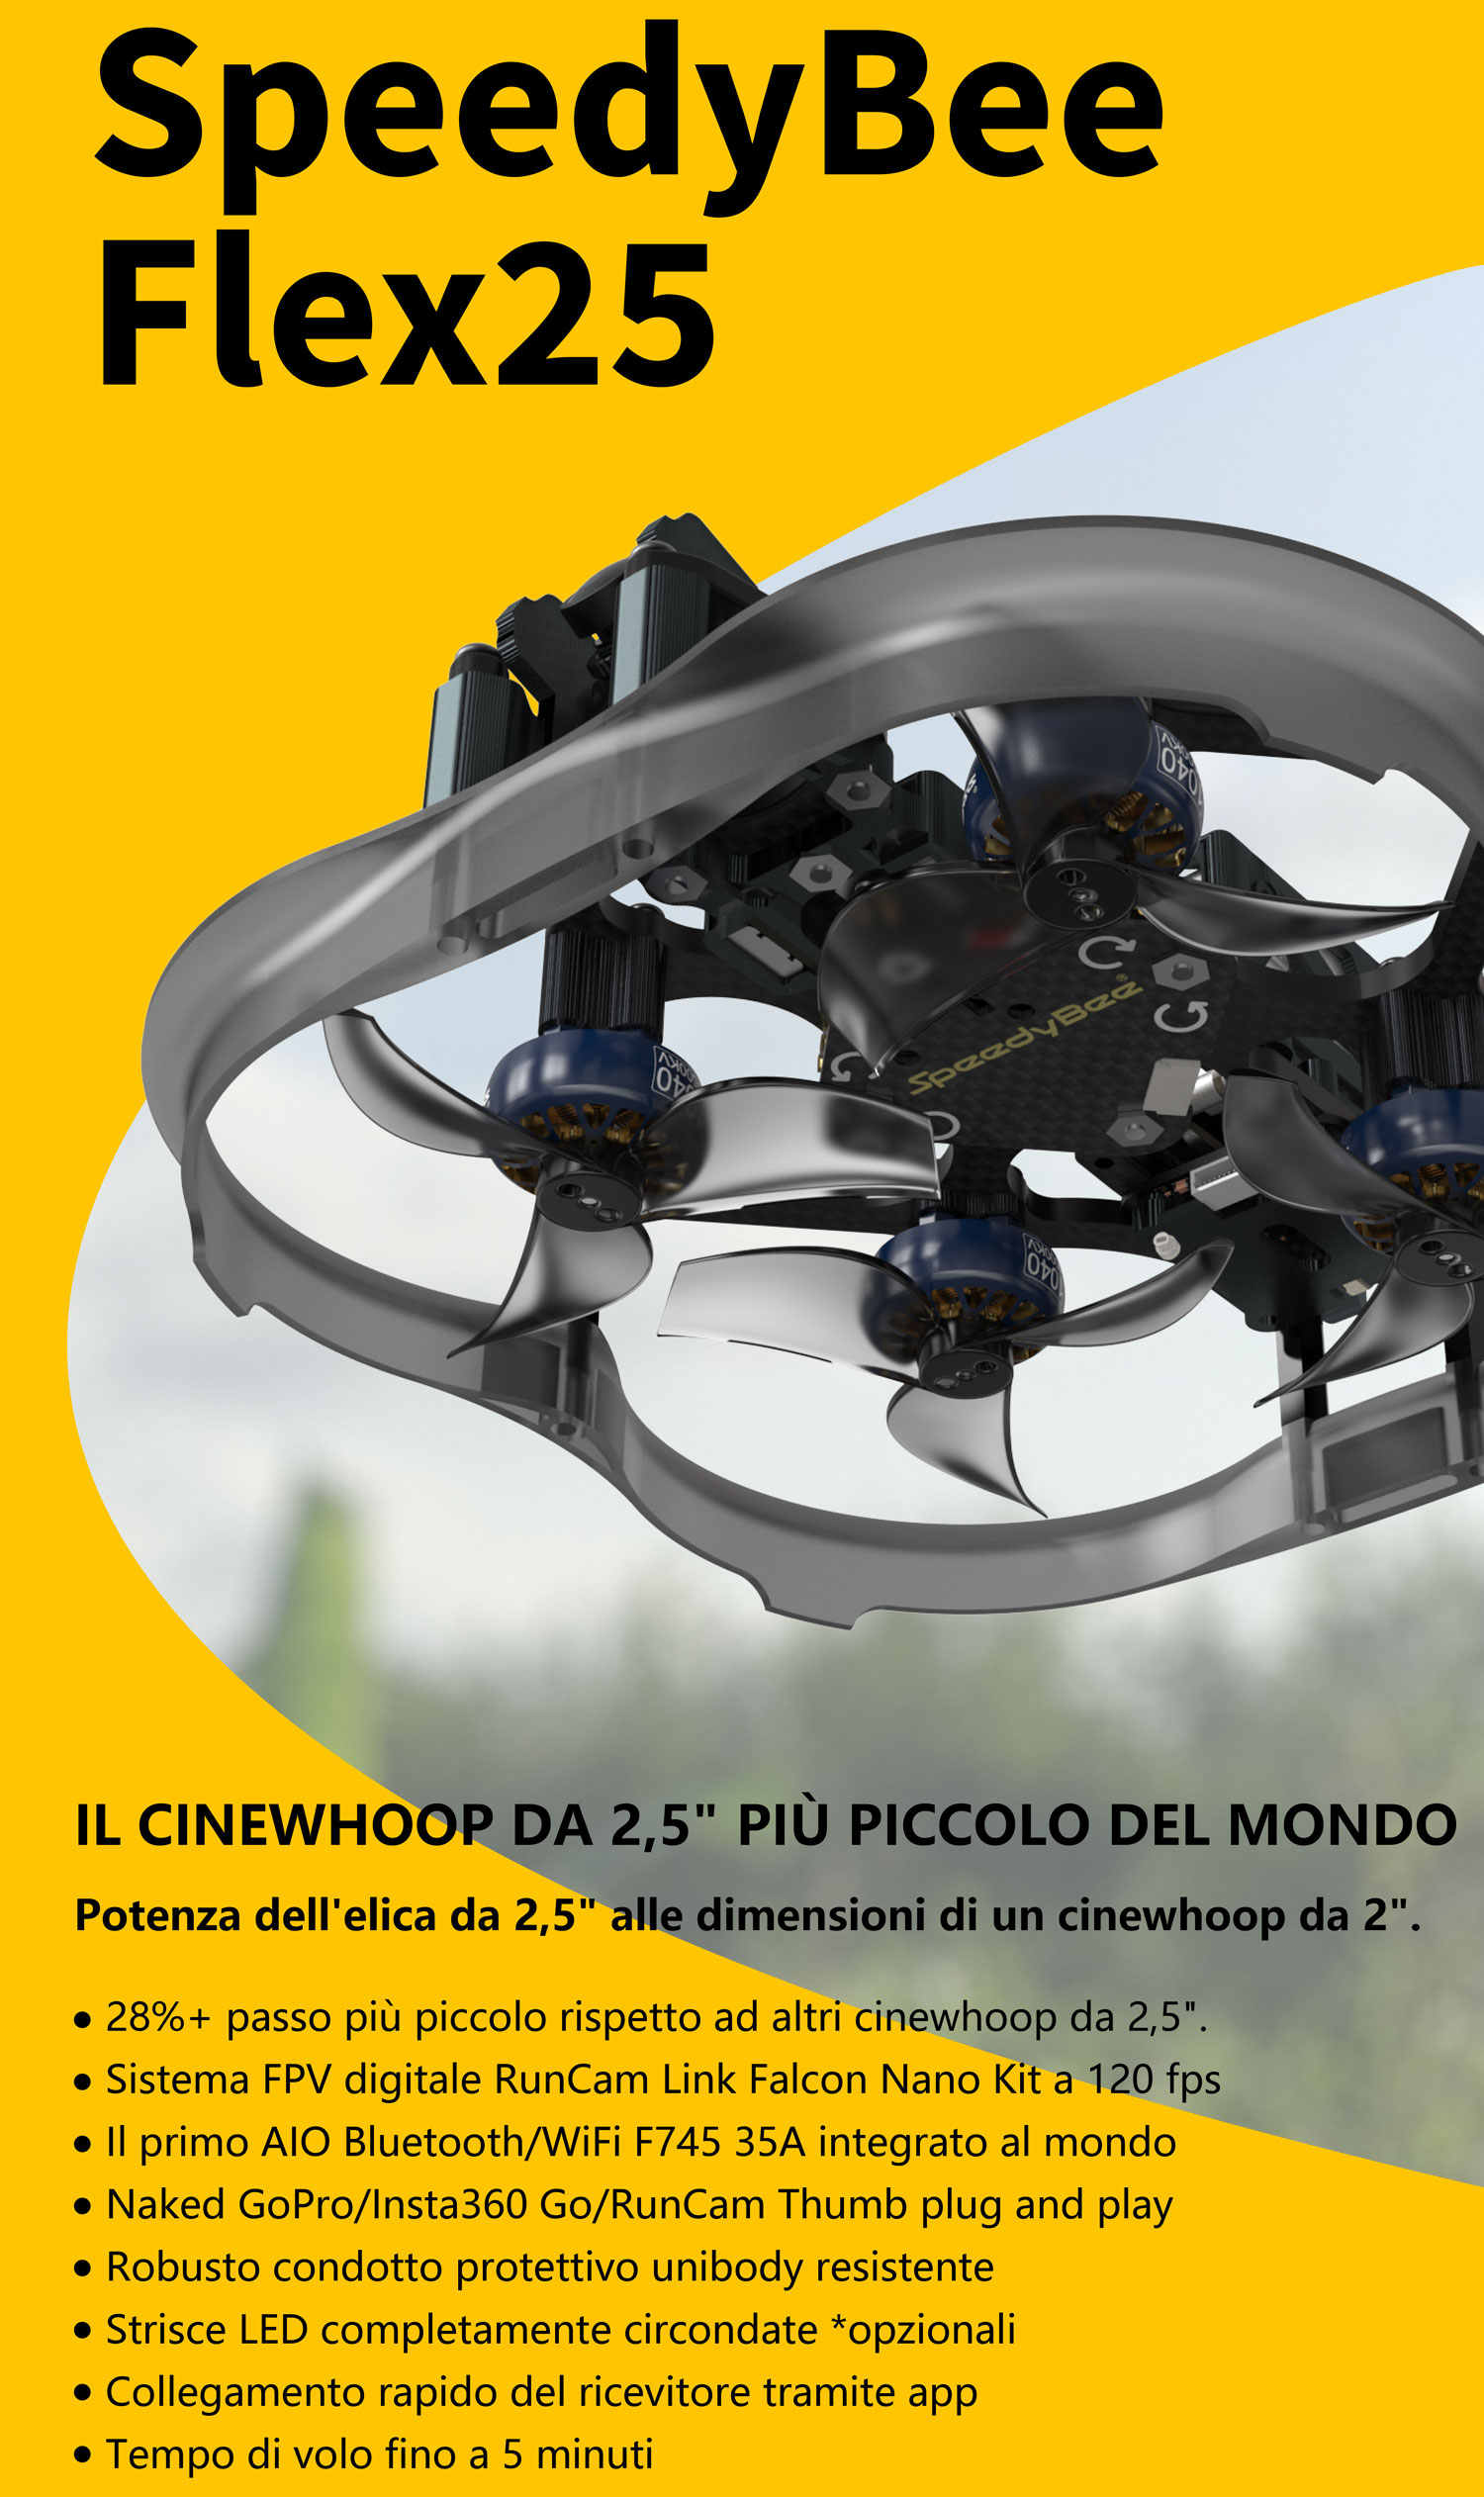 speedybee-flex25-hd-cinewhoop-drone_9.jpg